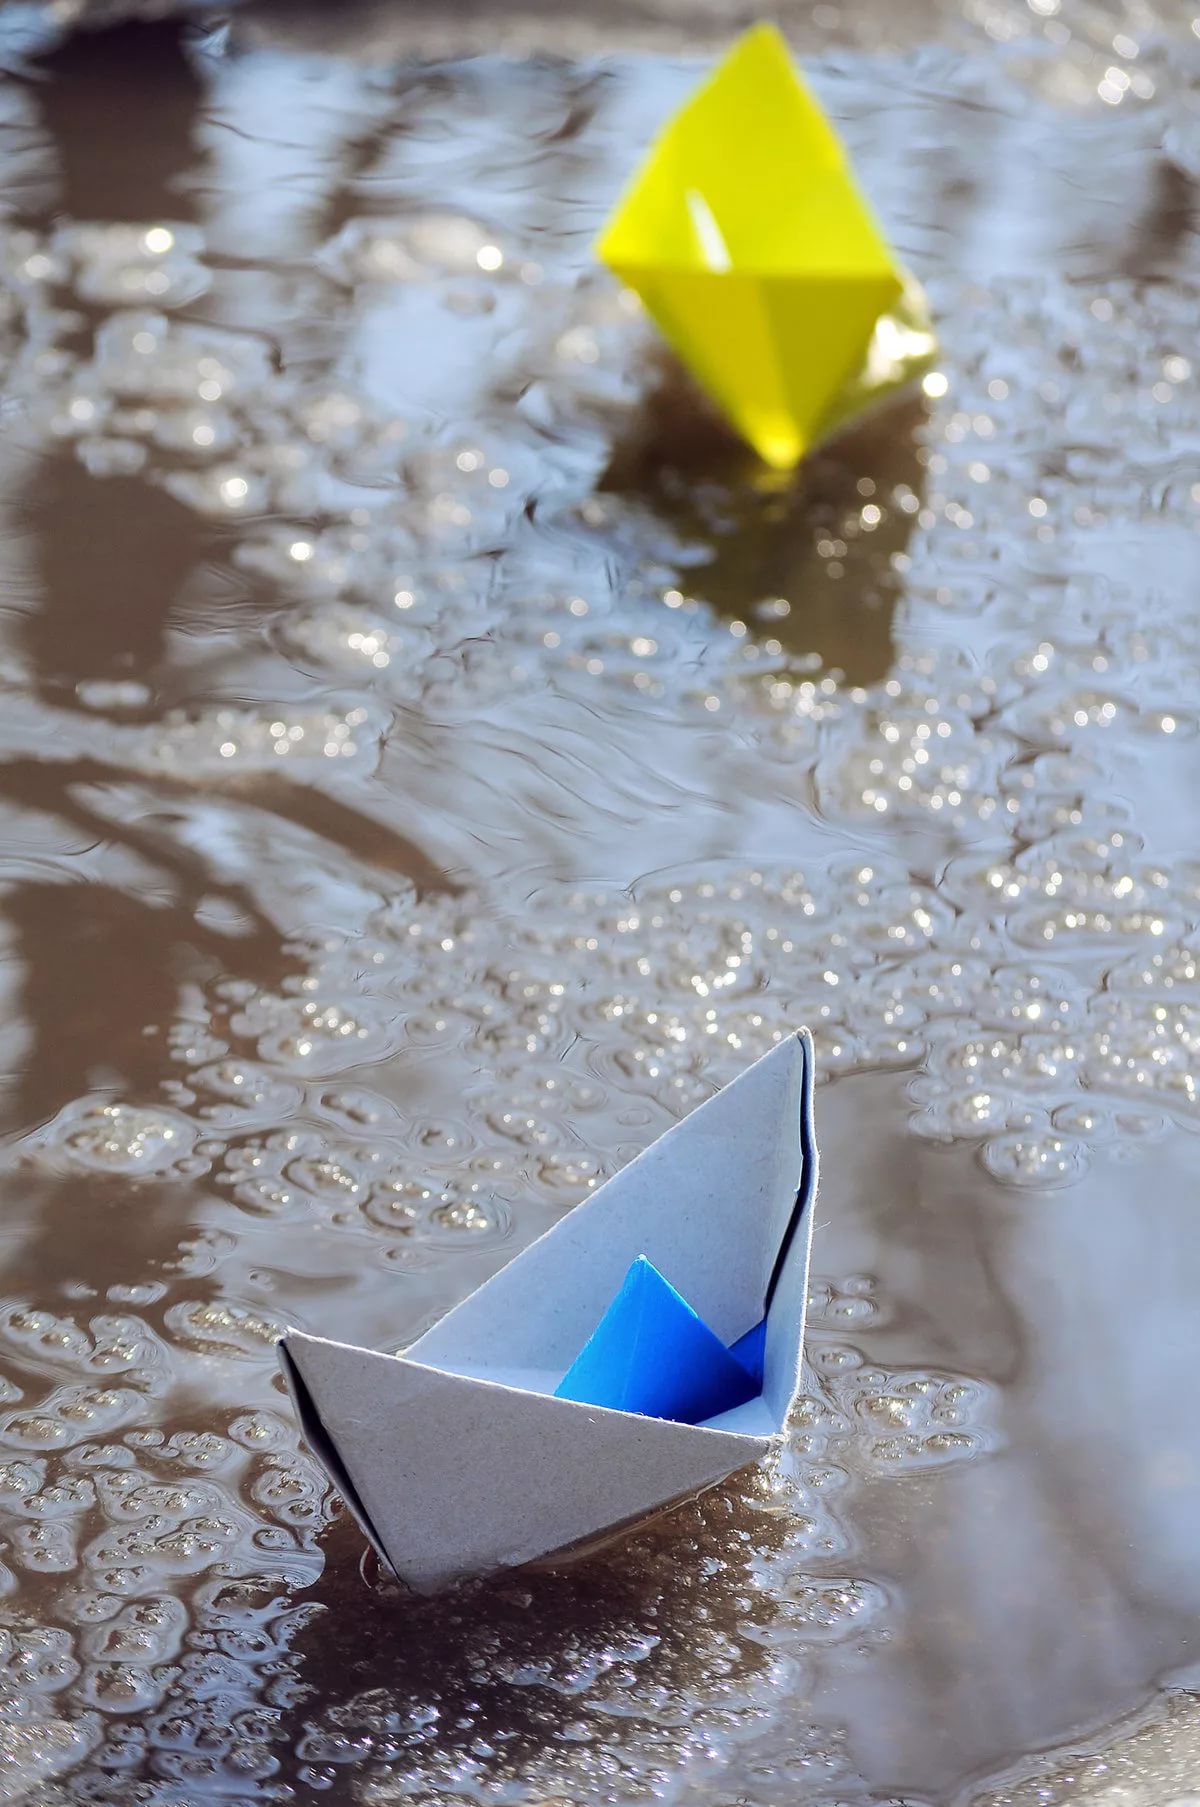 Кораблик из бумаги я по ручью. Бумажный кораблик. Бумажный корабль. Бумажный кораблик в ручейке. Кораблик в ручейке.